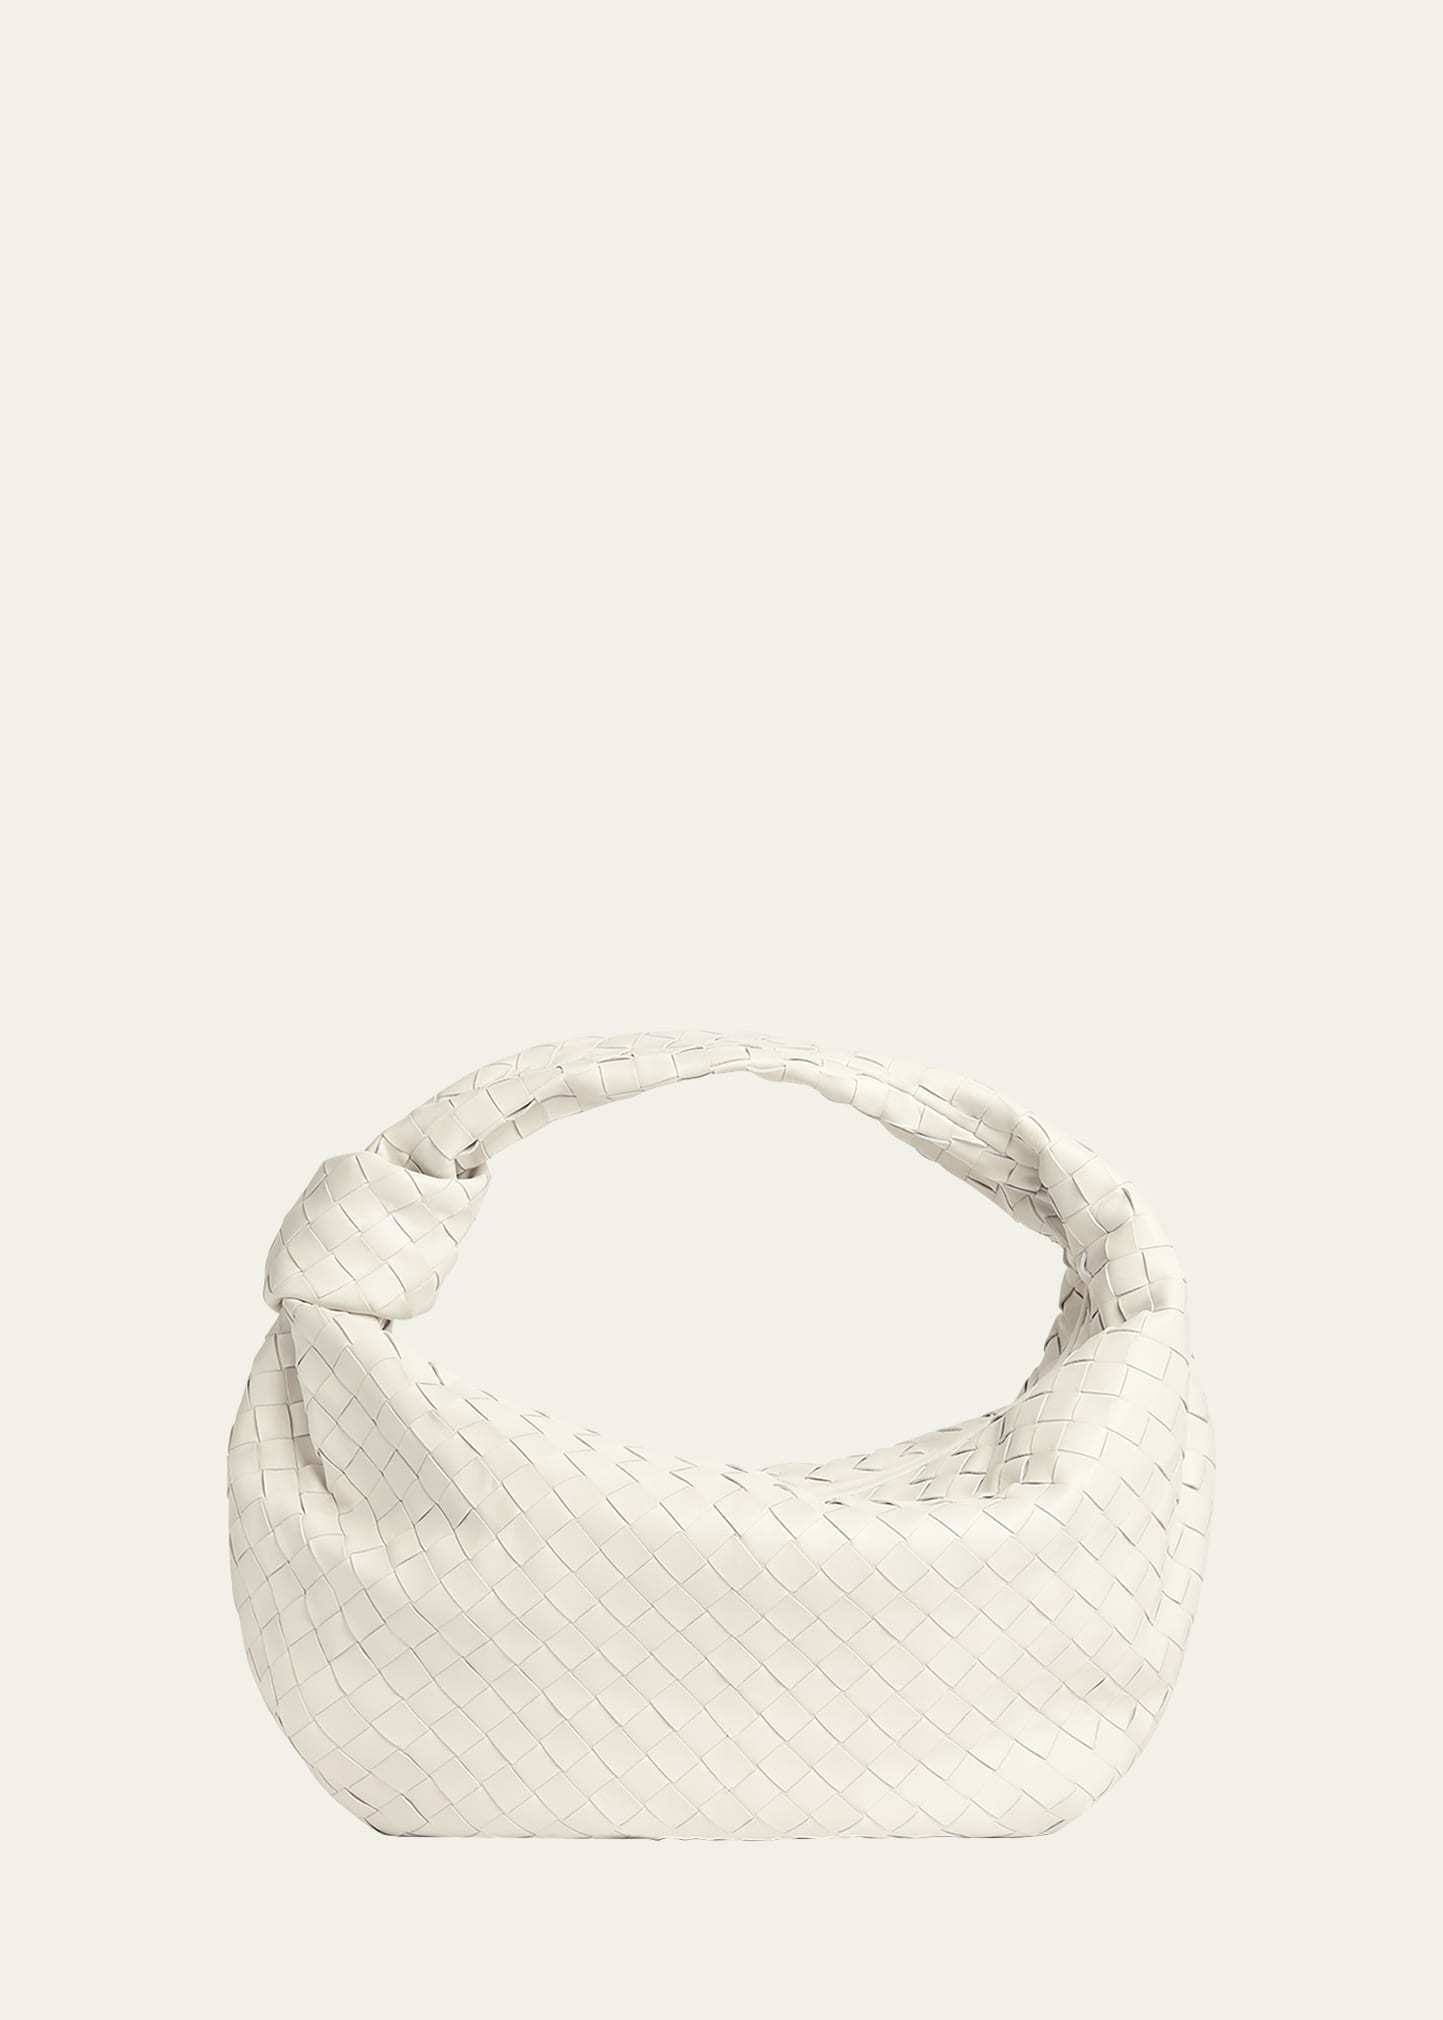 Bottega Veneta Jodie Mini Intrecciato Knot Hobo Bag - Bergdorf Goodman